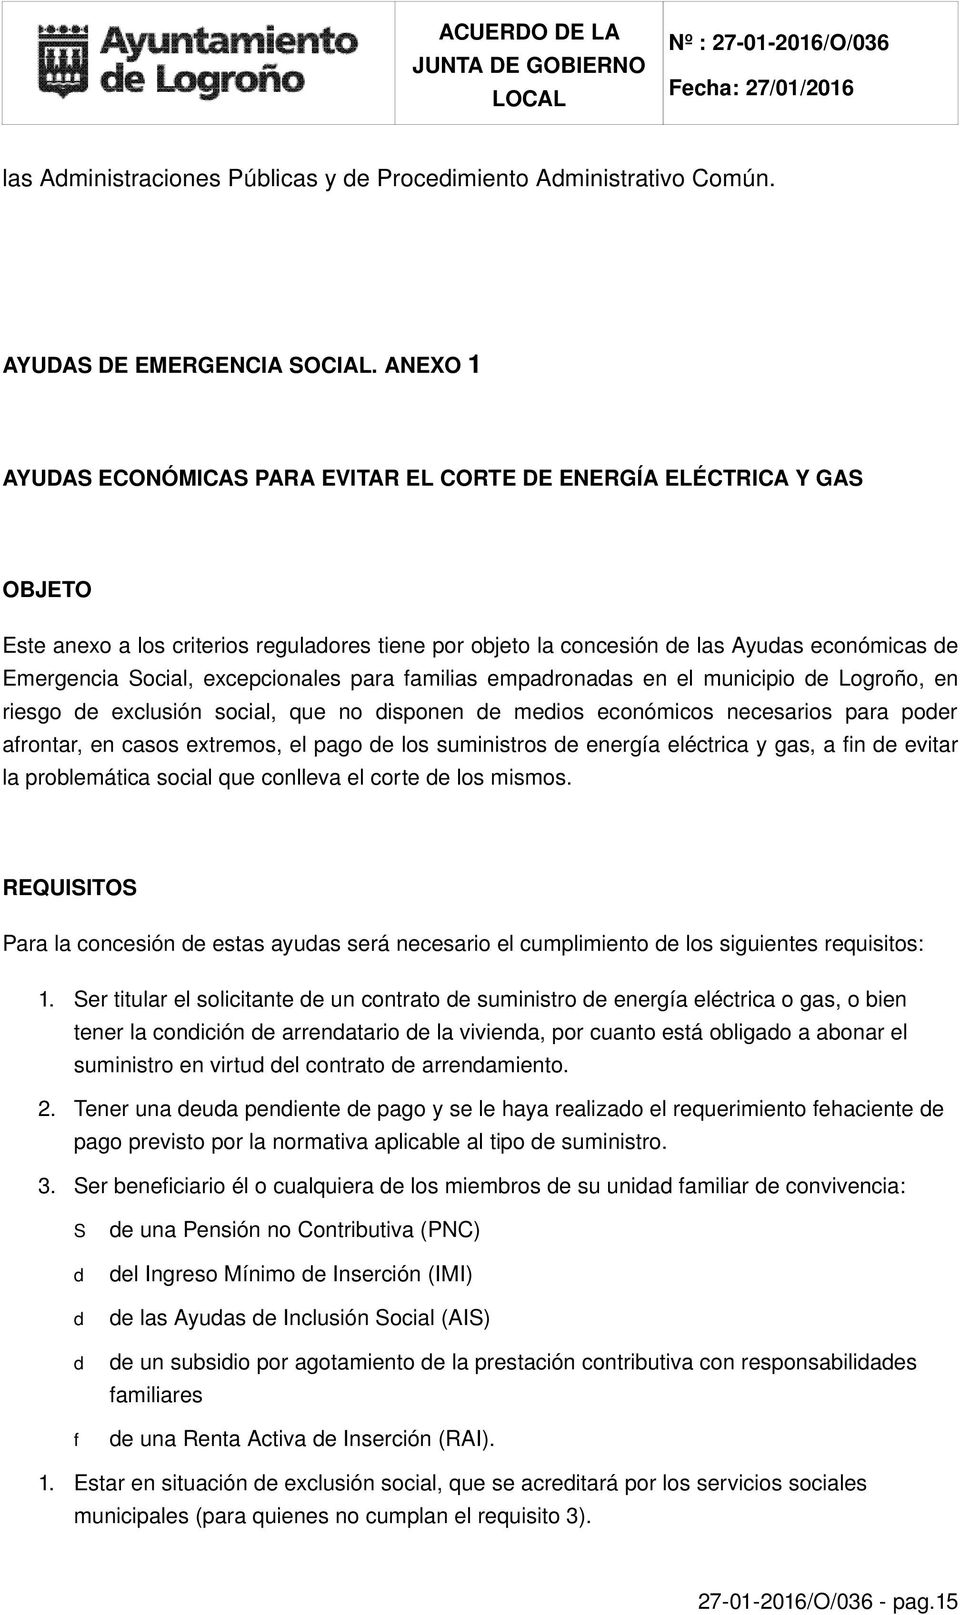 excepcionales para familias empadronadas en el municipio de Logroño, en riesgo de exclusión social, que no disponen de medios económicos necesarios para poder afrontar, en casos extremos, el pago de